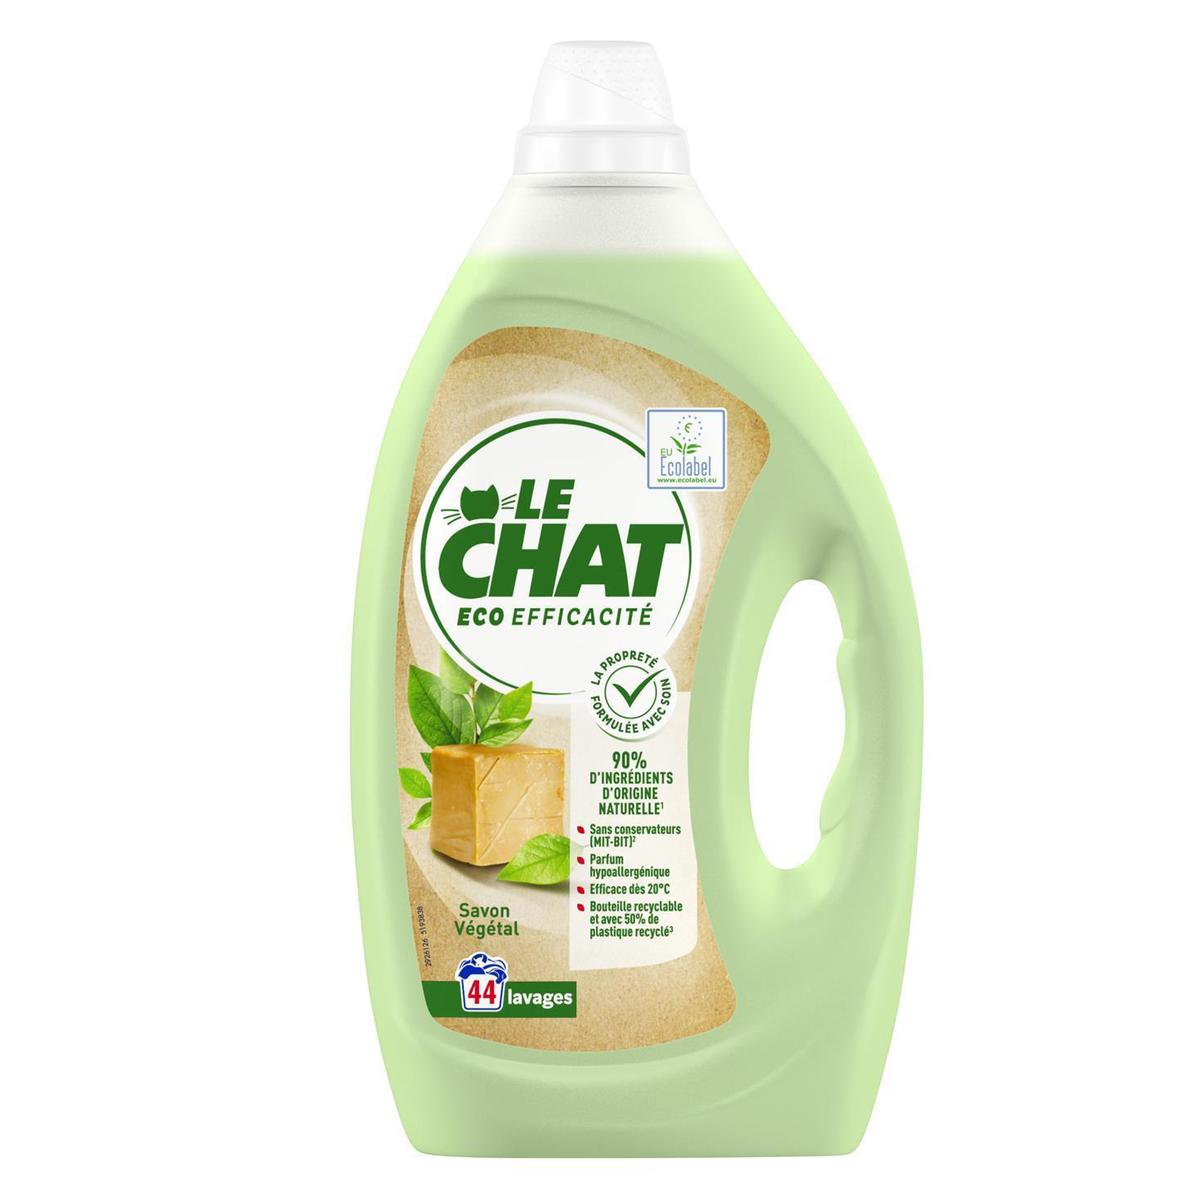 Achat / Vente Le Chat Lessive liquide Eco efficacité 44 lavages, 1,98L